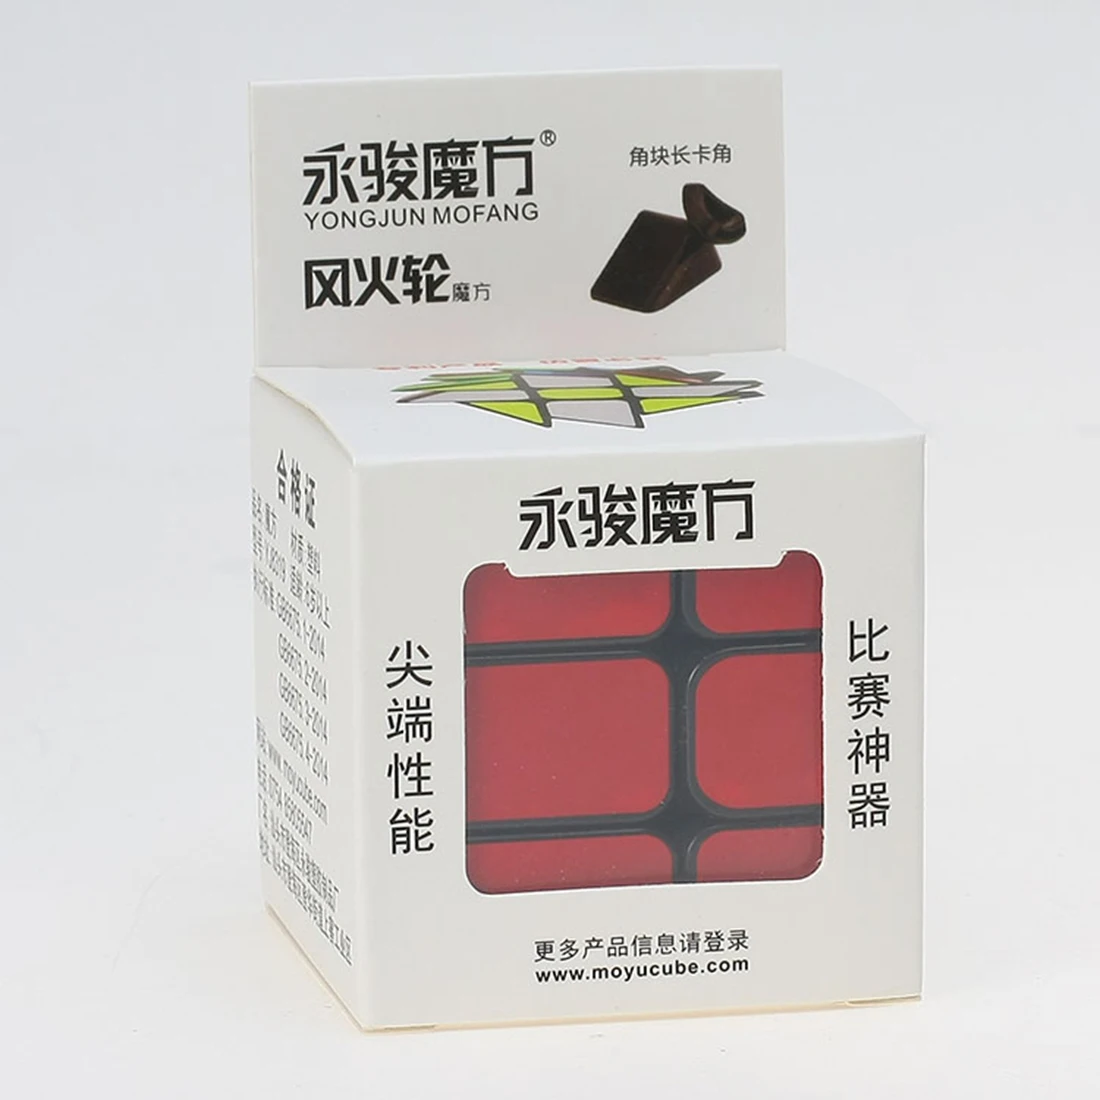 2019 Новое поступление Yongjun YJ горячая передача 3x3x3 волшебный куб головоломка для детей взрослых-белый/черный цвета